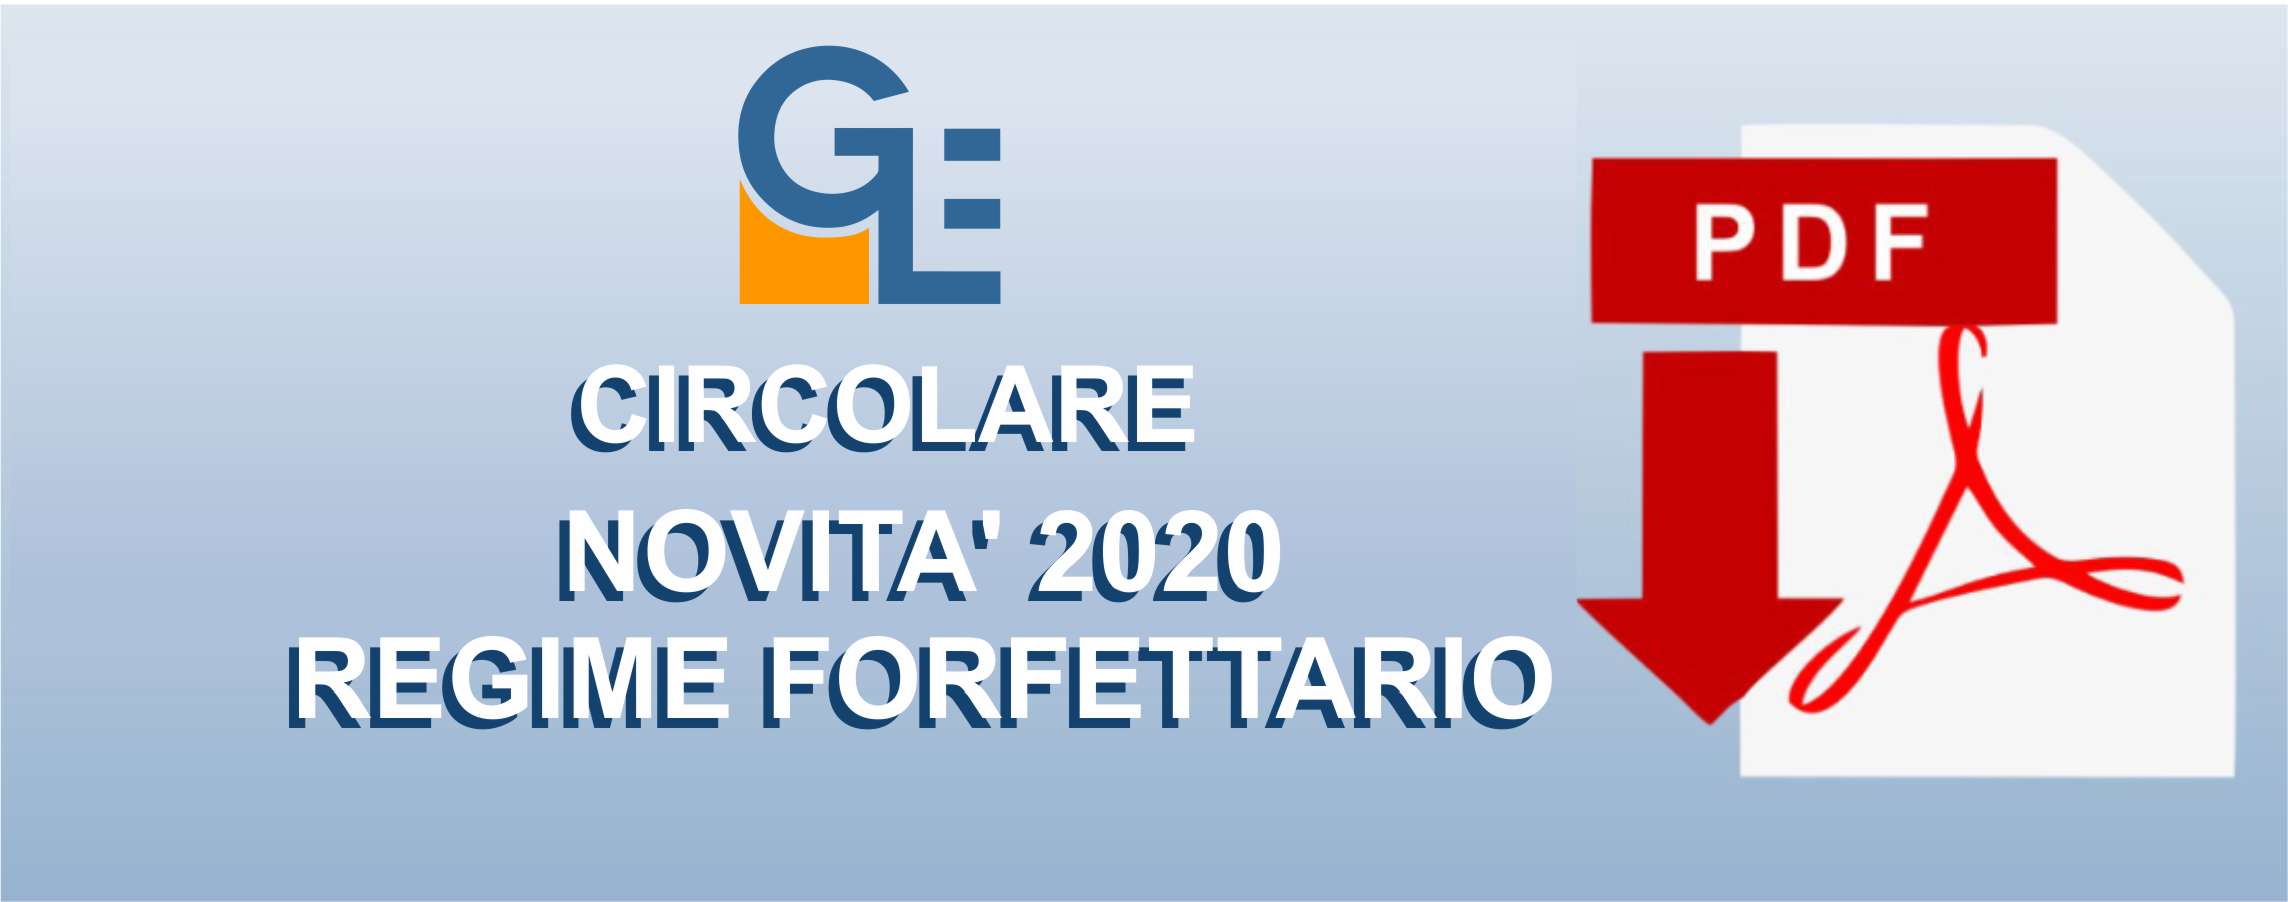 NOVITÀ' 2020 REGIME FORFETTARIO